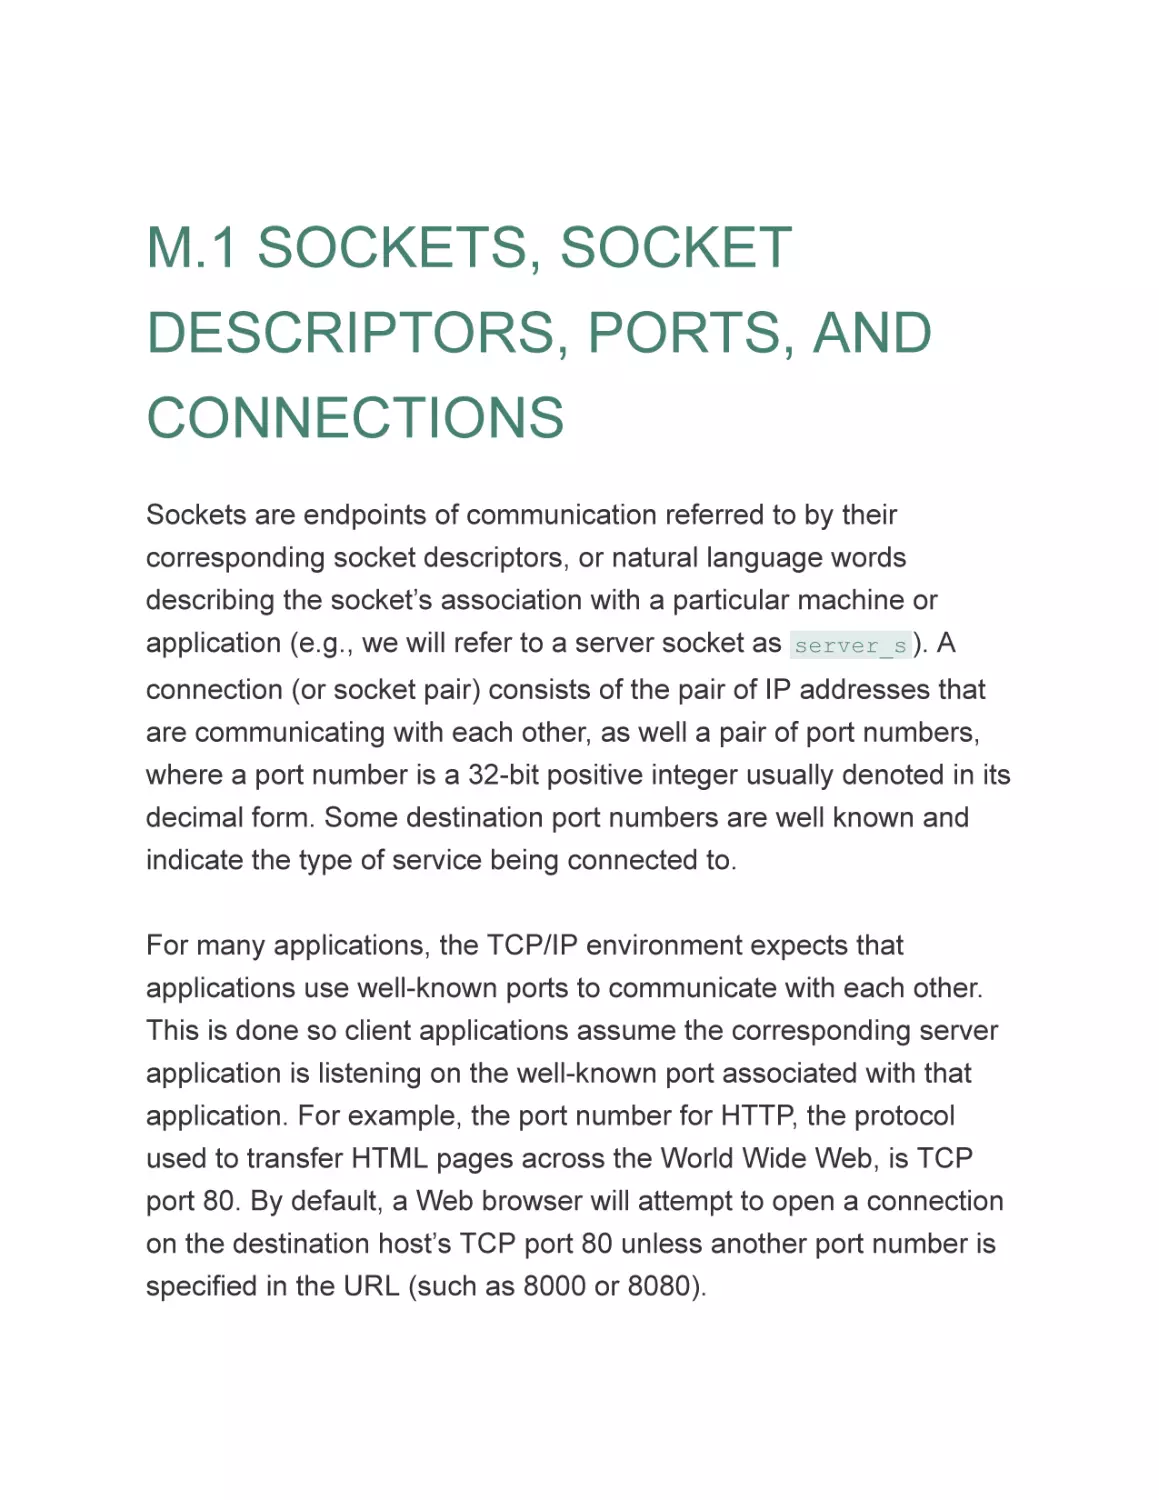 M.1 SOCKETS, SOCKET DESCRIPTORS, PORTS, AND CONNECTIONS